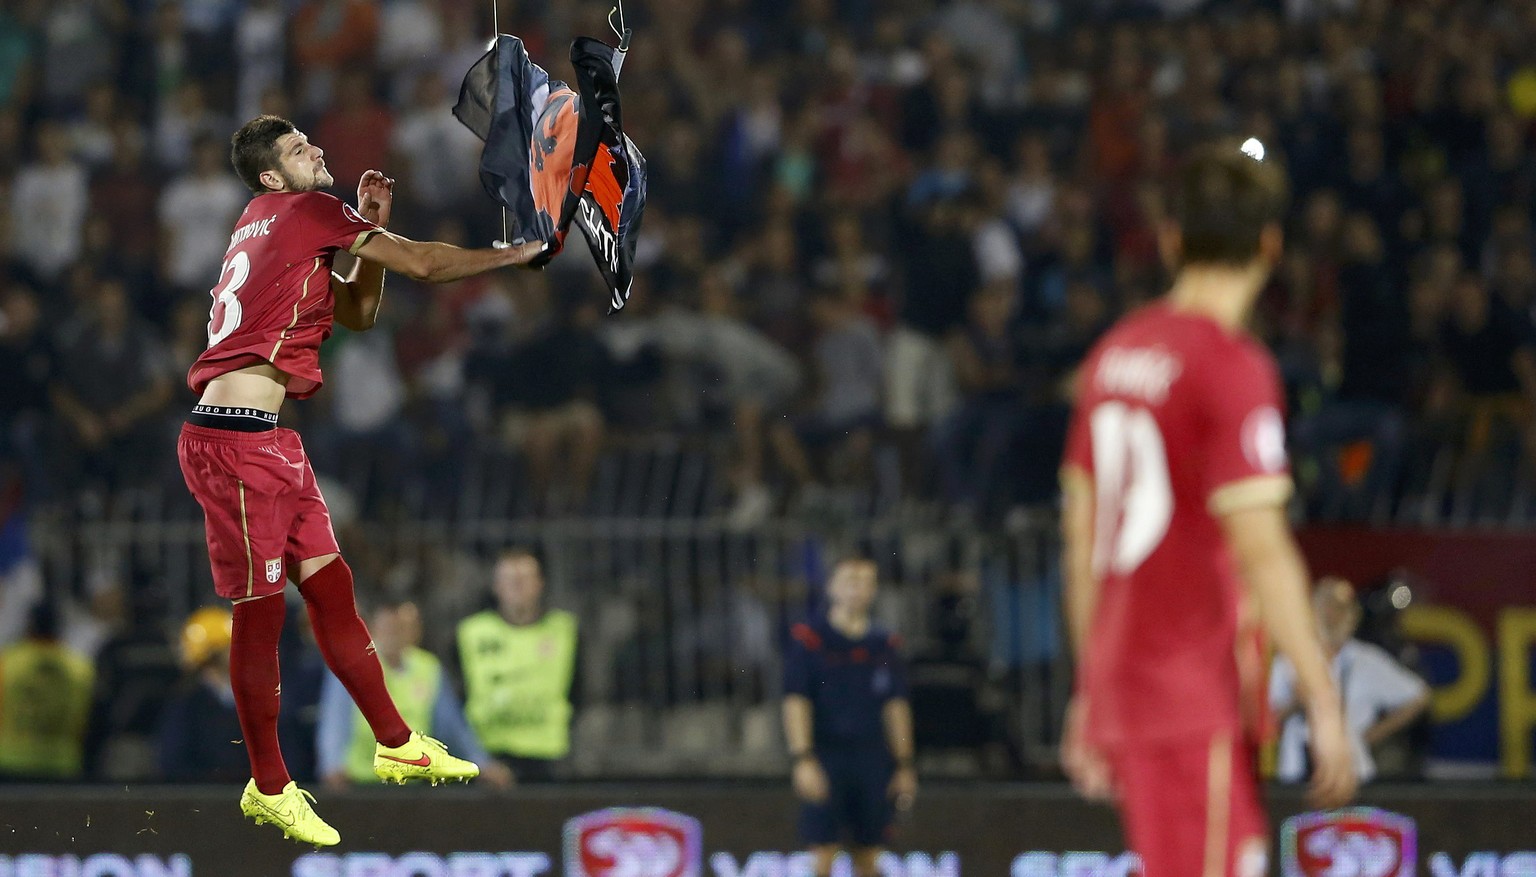 Der Serbe Mitrovic riss im Hinspiel eine umstrittene albanische Flagge runter, die mit einer Drohne ins Stadion gelangte.